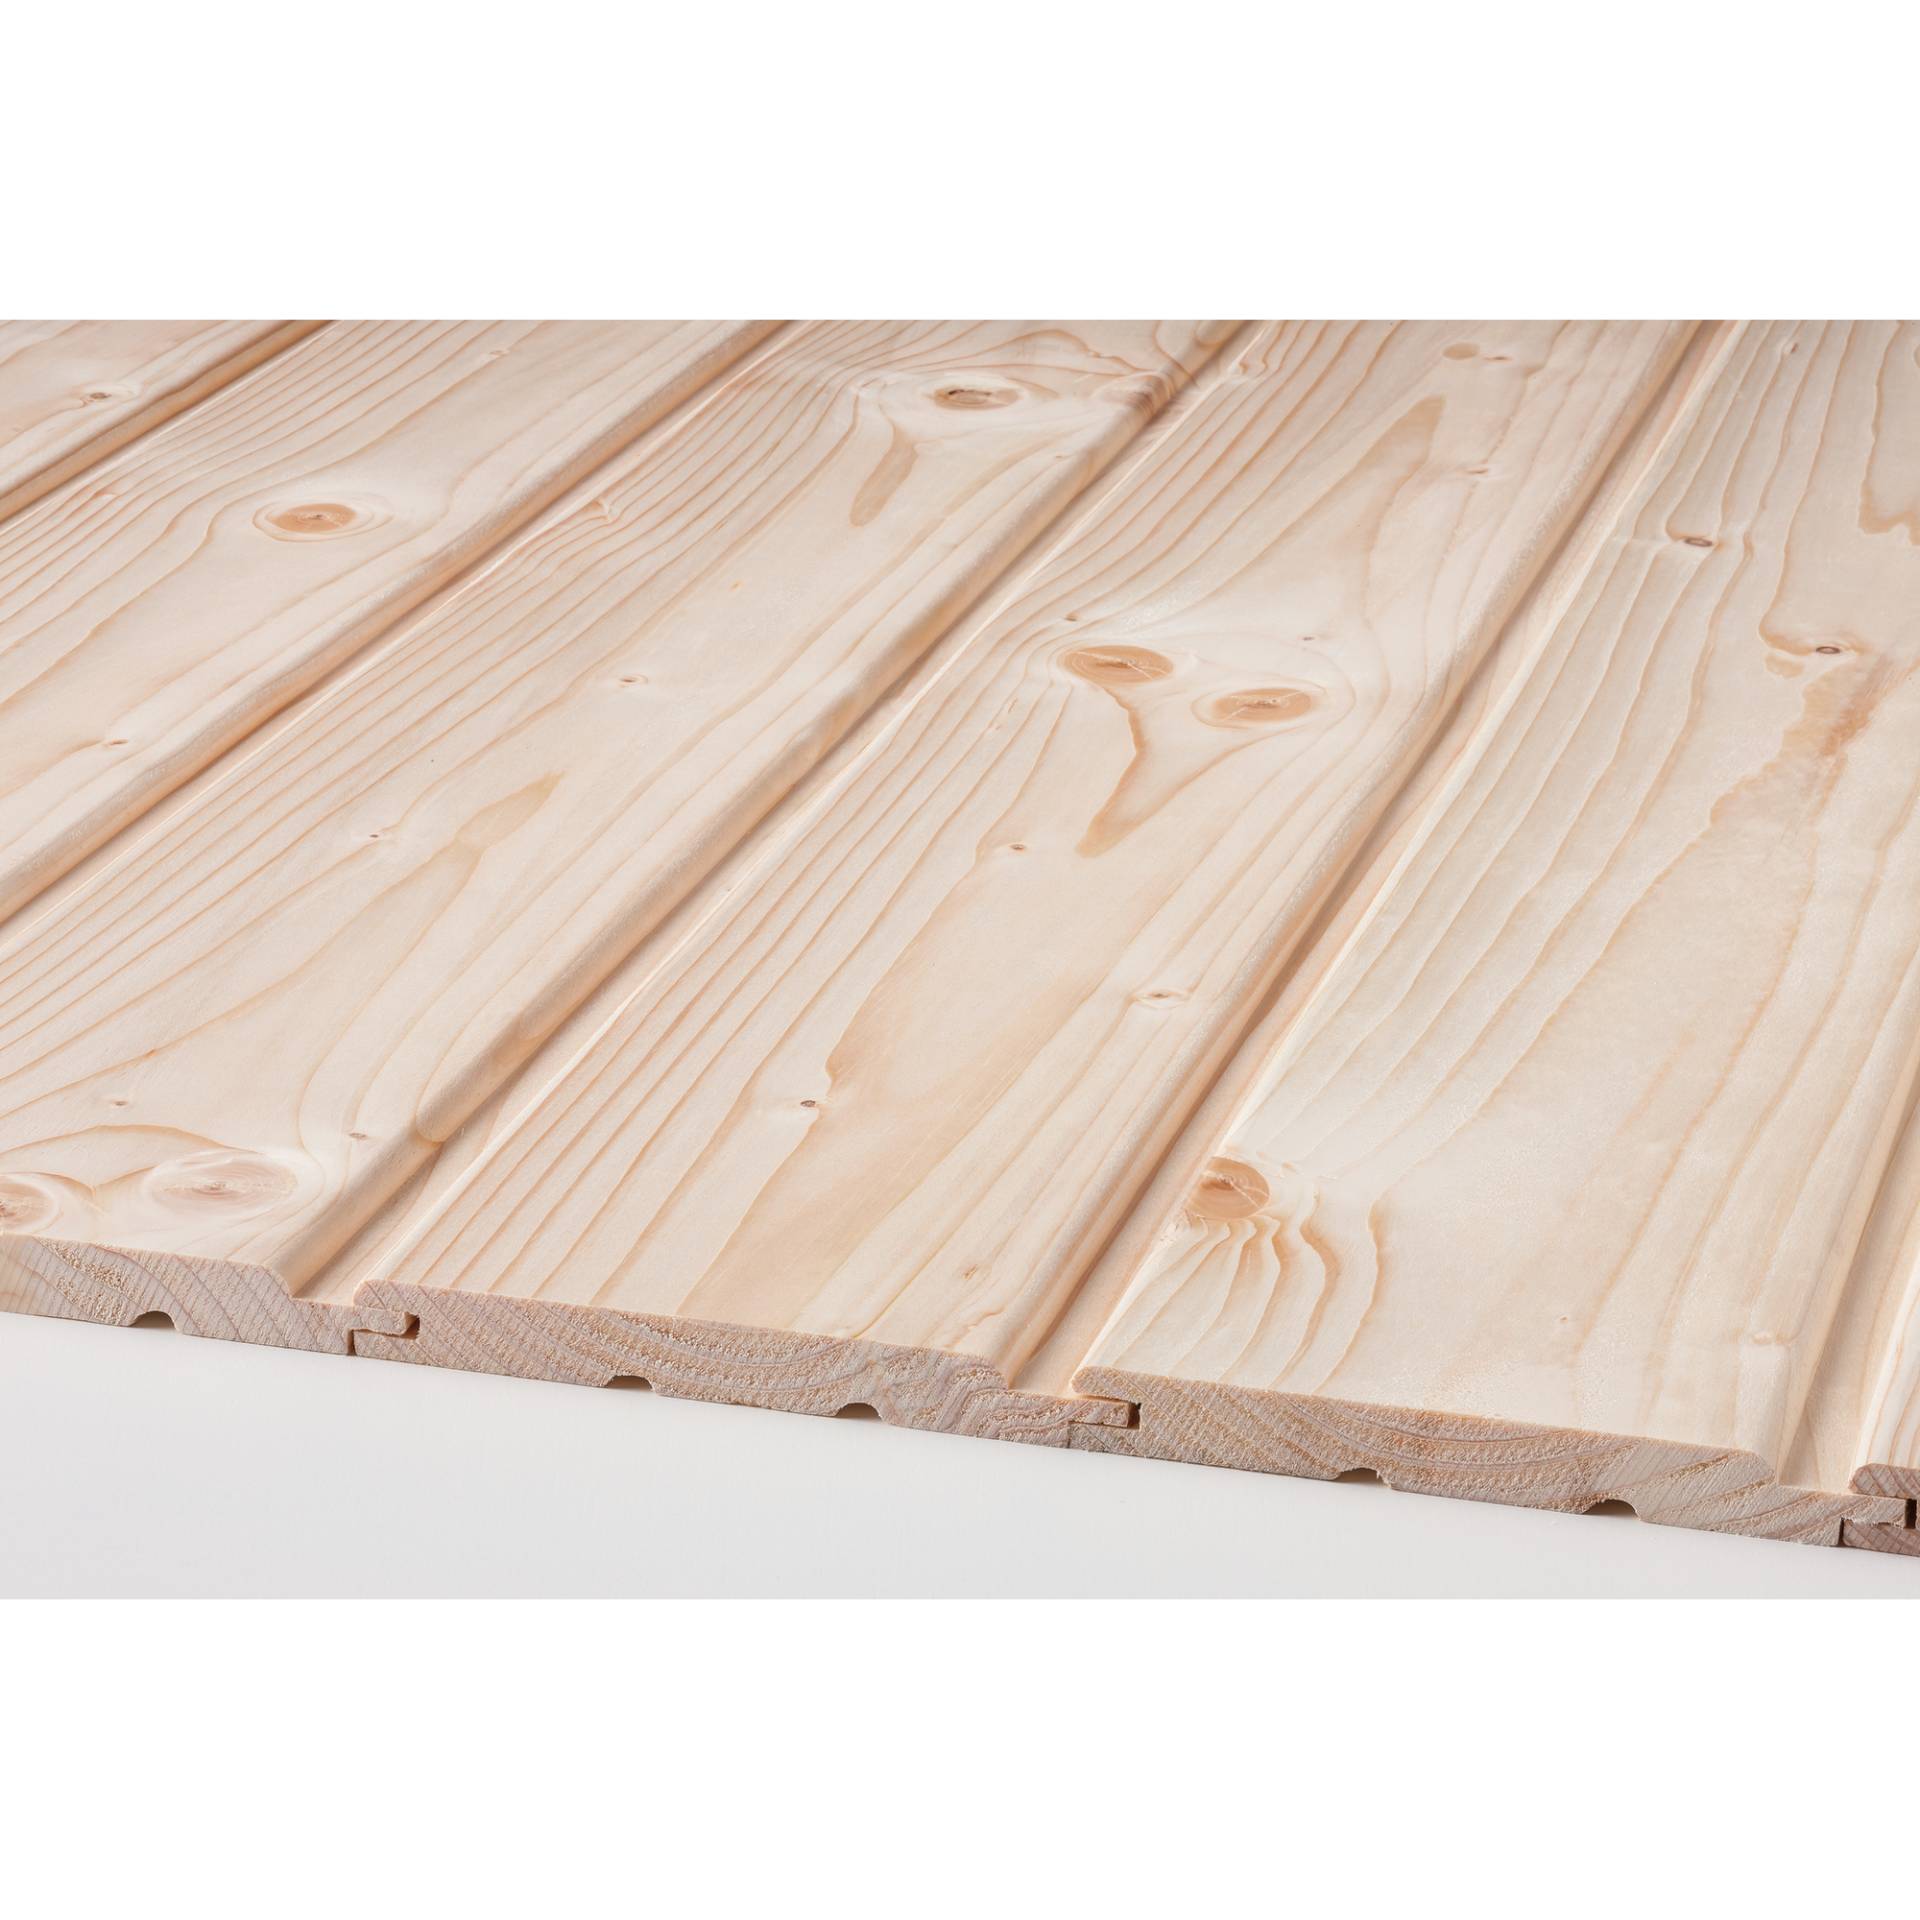 binderholz Profilholz Softlineprofil Fichte/Tanne gehobelt 14 x 121 x 2500 mm B-Sortierung von binderholz